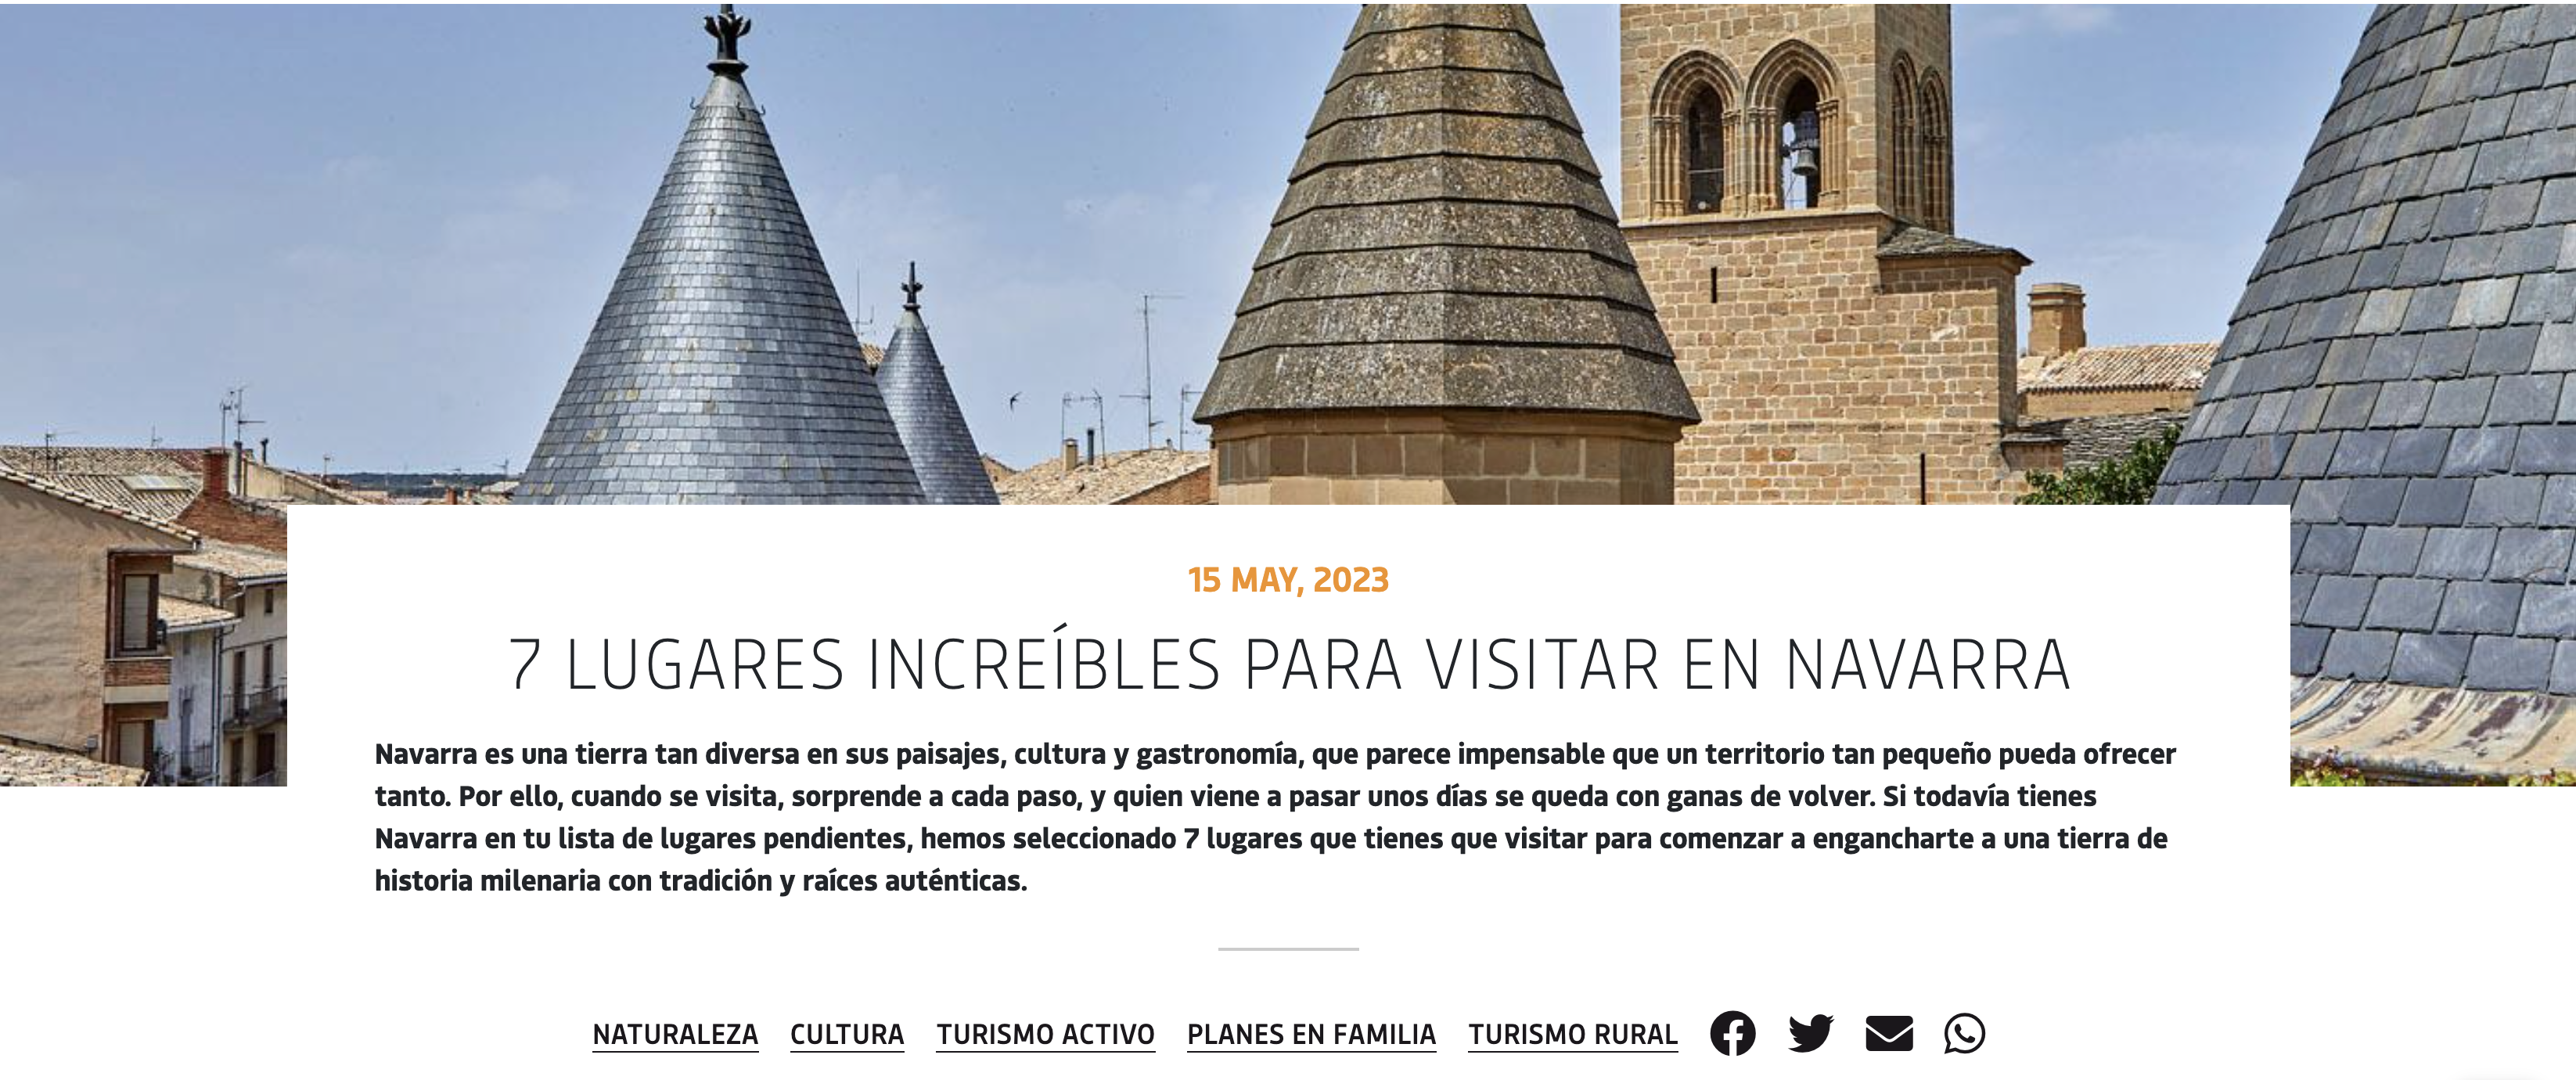 “Una excelente selección de lugares para visitar en Navarra que encandilen a los posibles visitantes”, nuevo artículo del blog de Turismo de Navarra